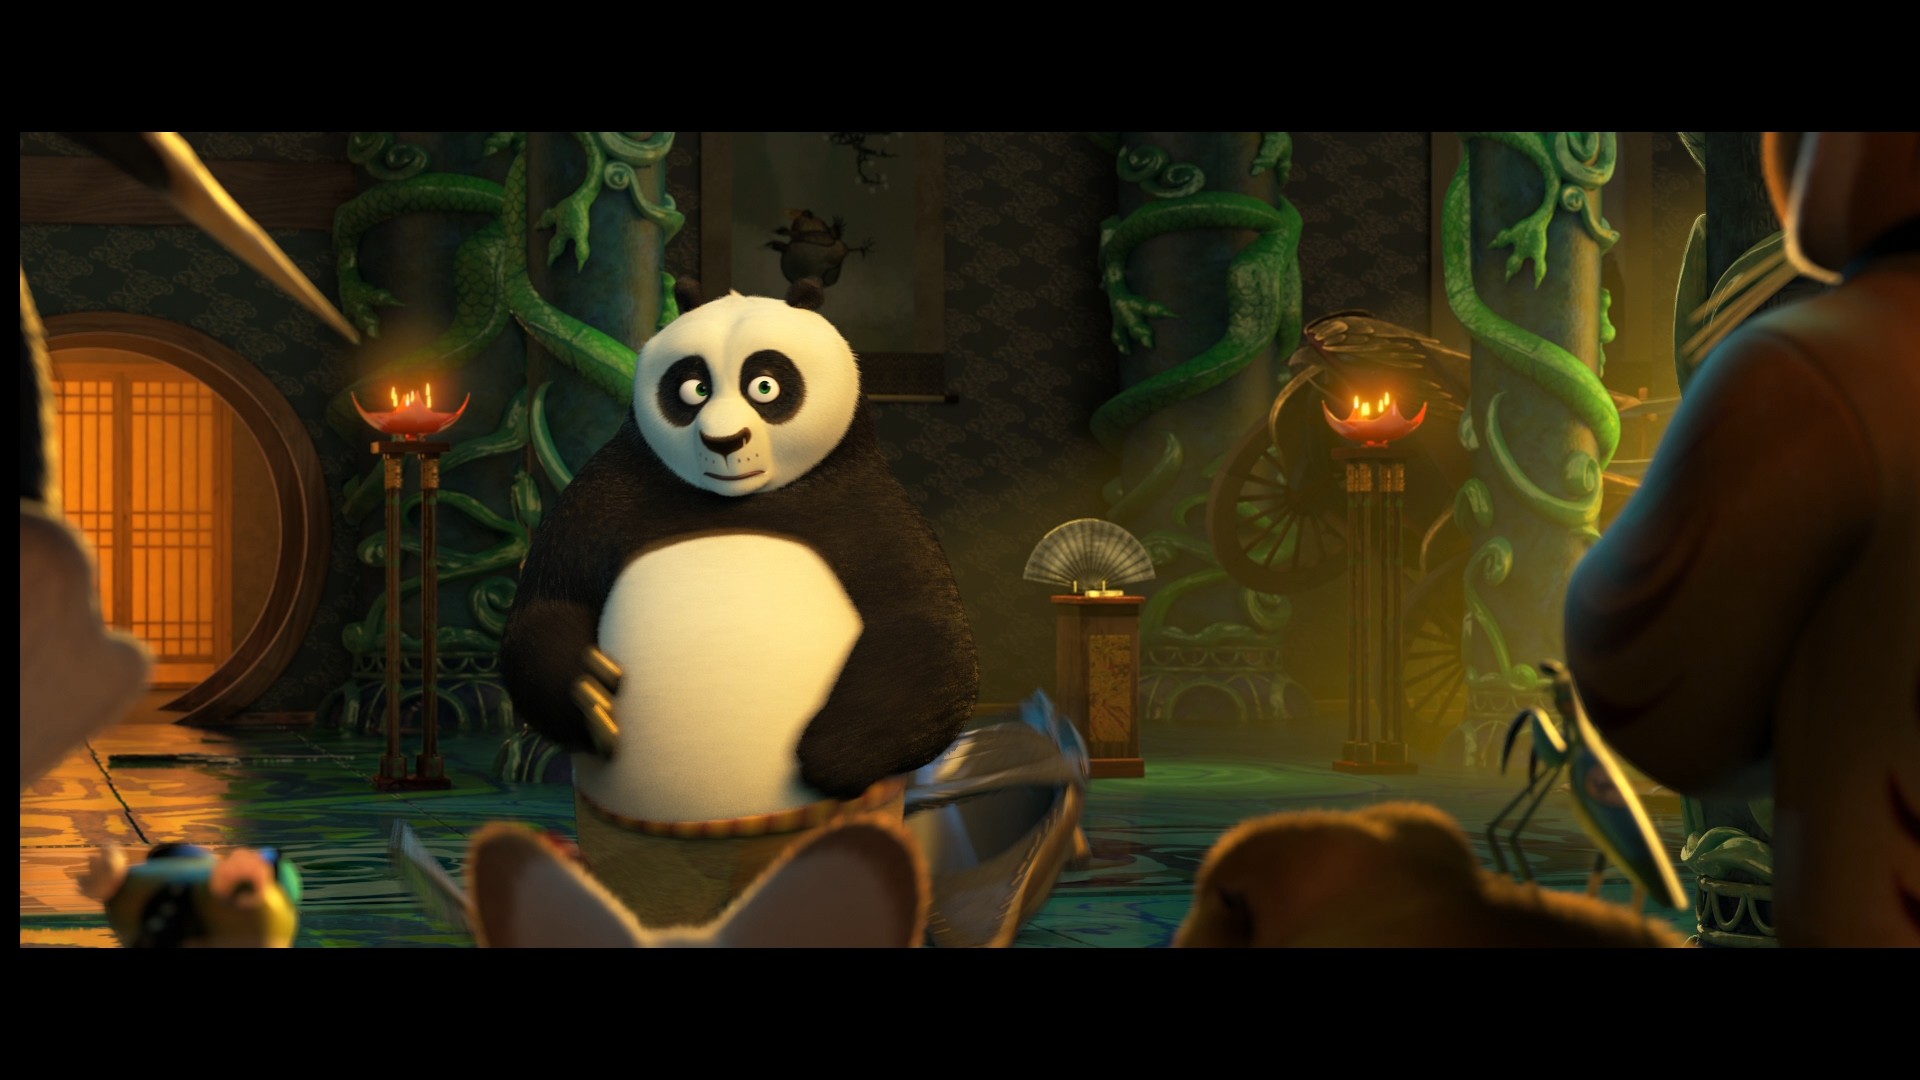 [功夫熊猫3].Kung.Fu.Panda.3.2016.HK.3D.BluRay.1080p.AVC.DTS-HD.MA.7.1-TTG   37.03G-5.jpg